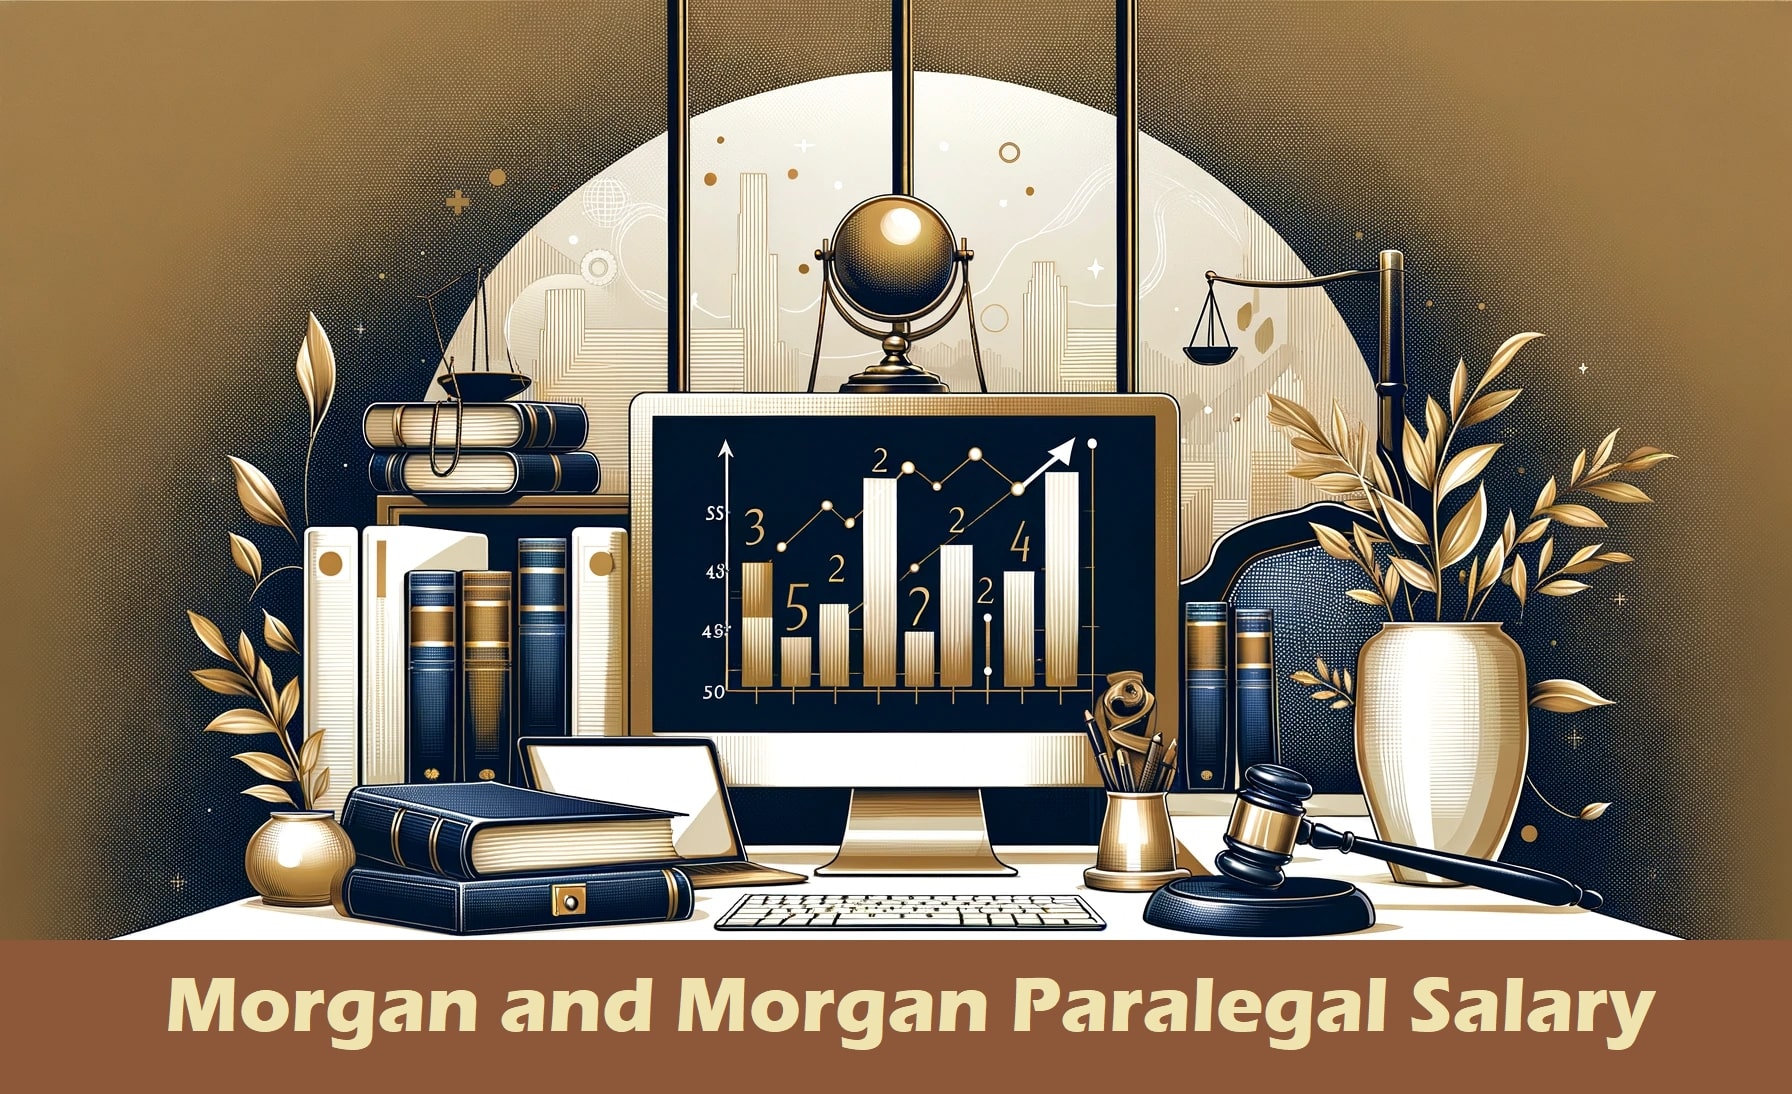 Morgan and Morgan Paralegal Salary An In-Depth Analysis